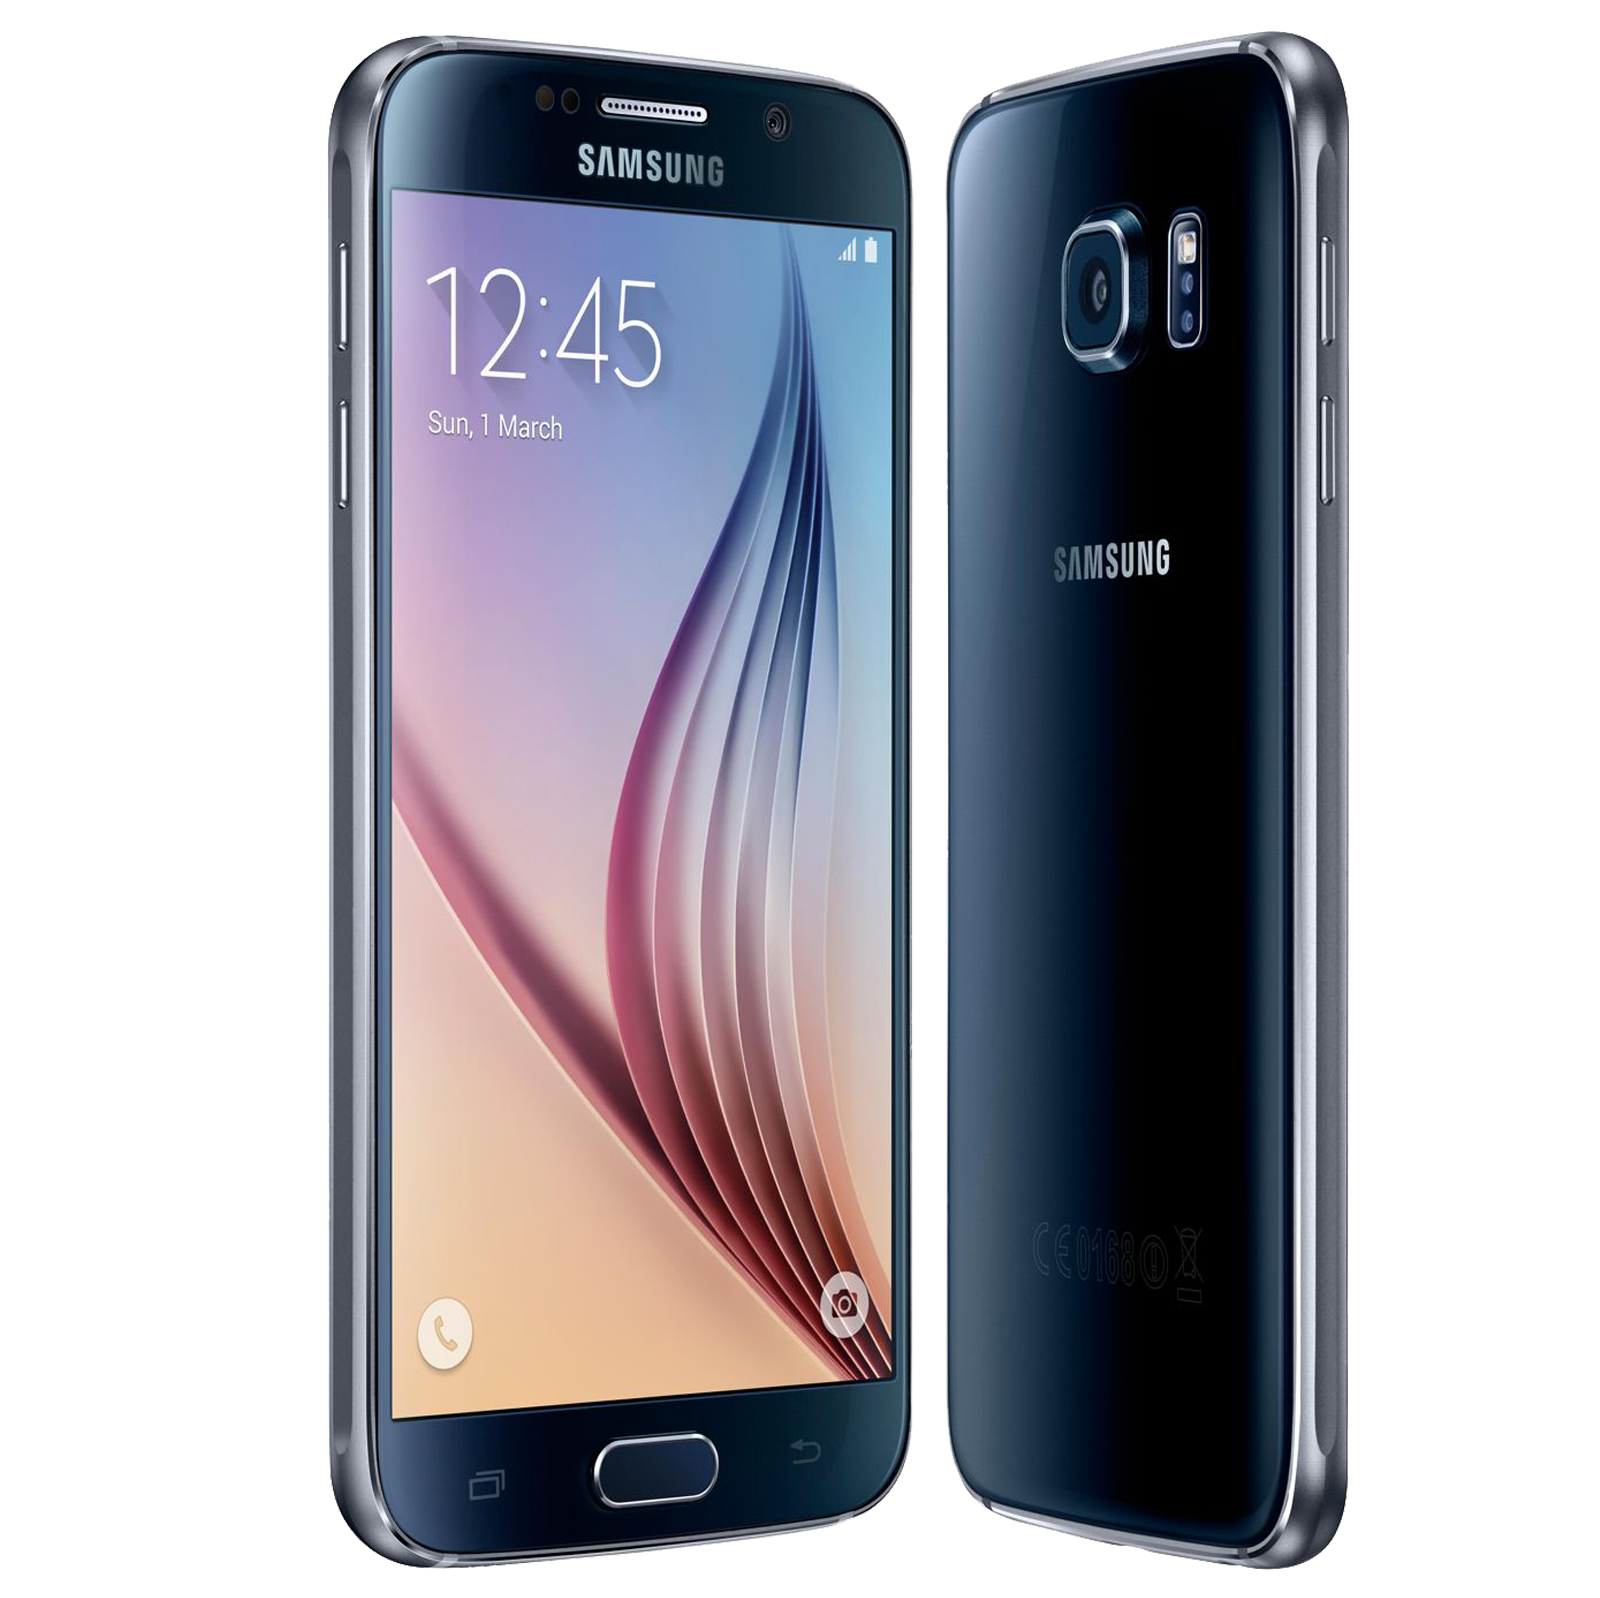 首款曲面屏手机 Galaxy三星S6 Edge热销-搜狐数码